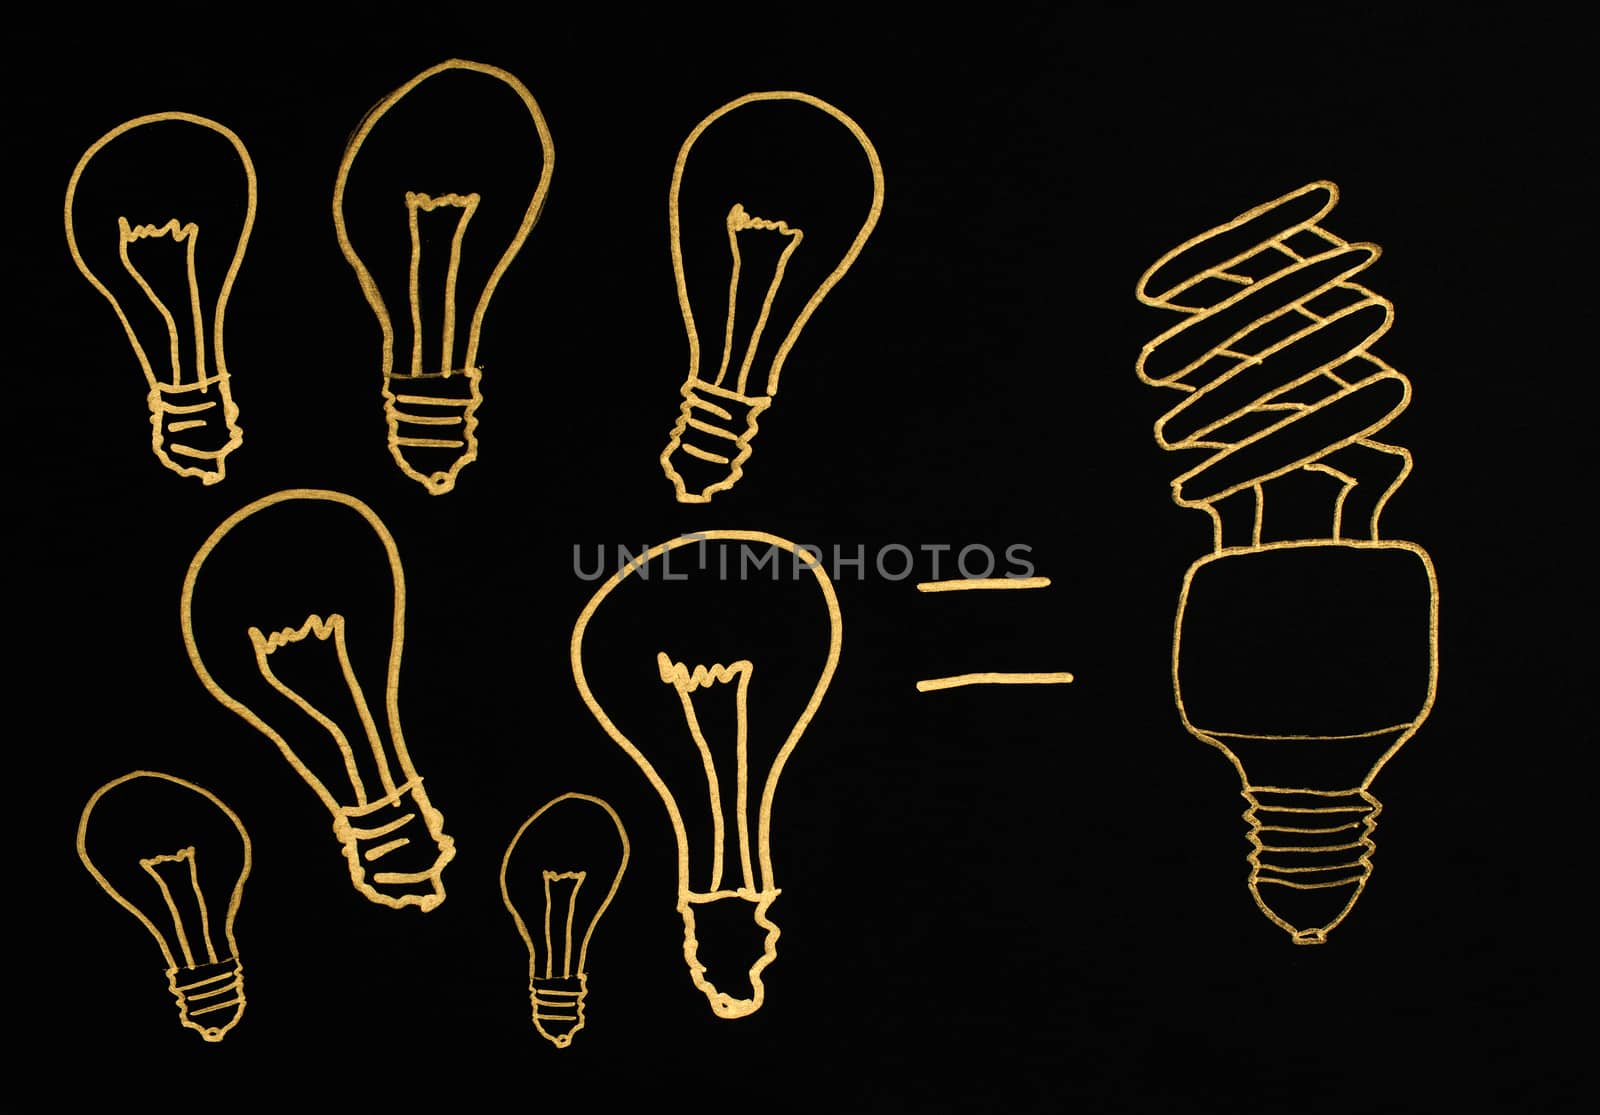 Efficient lamps concept illustration. Ecology conception